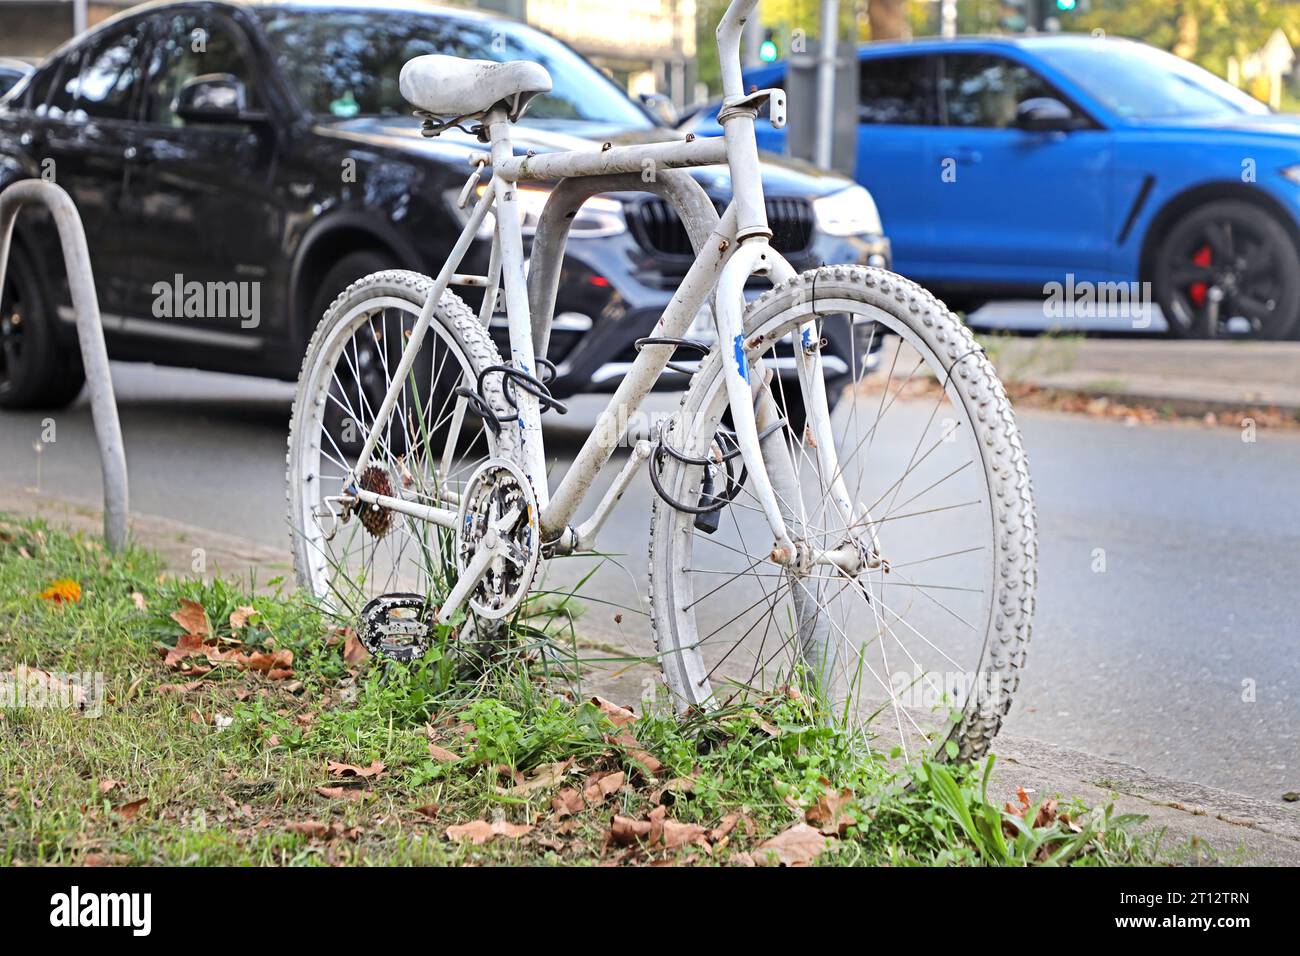 Weiße Ghost-Bikes erinnern an tödlich verunglückte Radfahrer am Rand einer stark befahrenen Straße, die als Unfallschwerpunkt gilt, befindet sich ein sogenanntes weißes Ghost-Bike nach einem tödlichen Unfall. *** White Ghost Bikes gedenken an den Tod eines Radfahrers auf einer befahrenen Straße, die als Unfallschwerpunkt gilt, befindet sich nach einem tödlichen Unfall ein sogenanntes White Ghost Bike. Credit: Imago/Alamy Live News Stockfoto